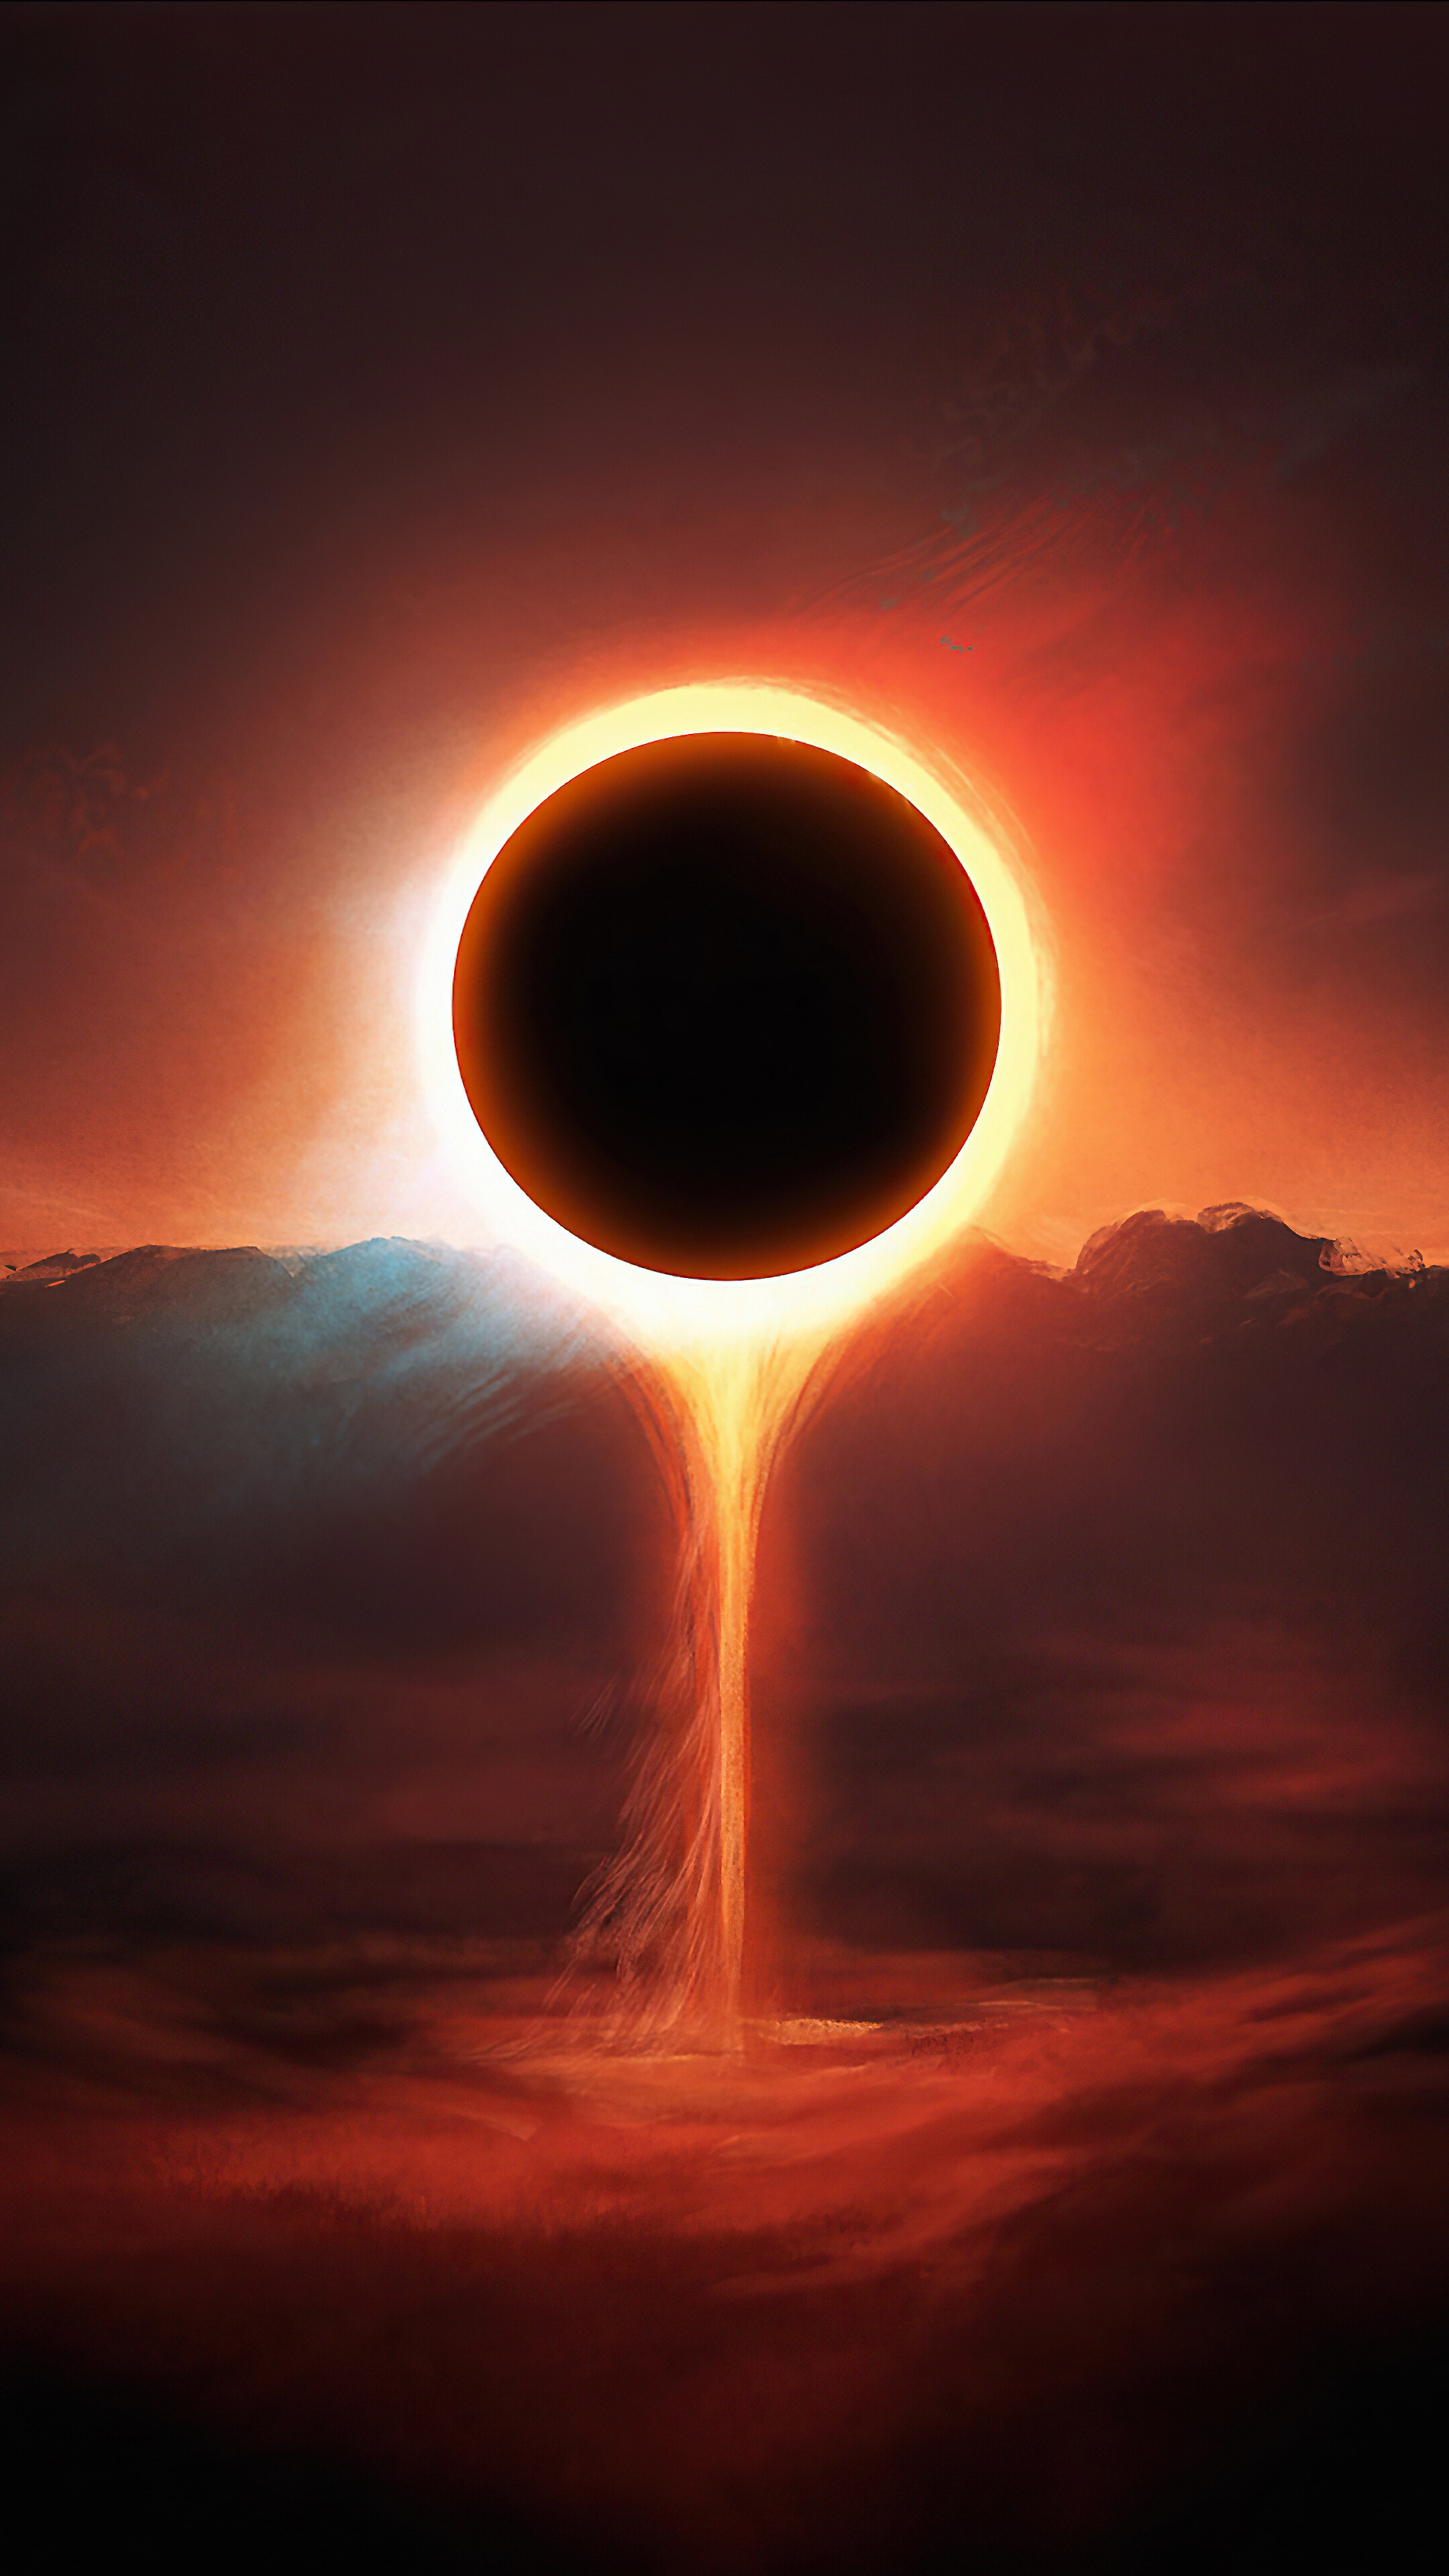 Eclipse Digital Art Scenery 4k Wallpaper